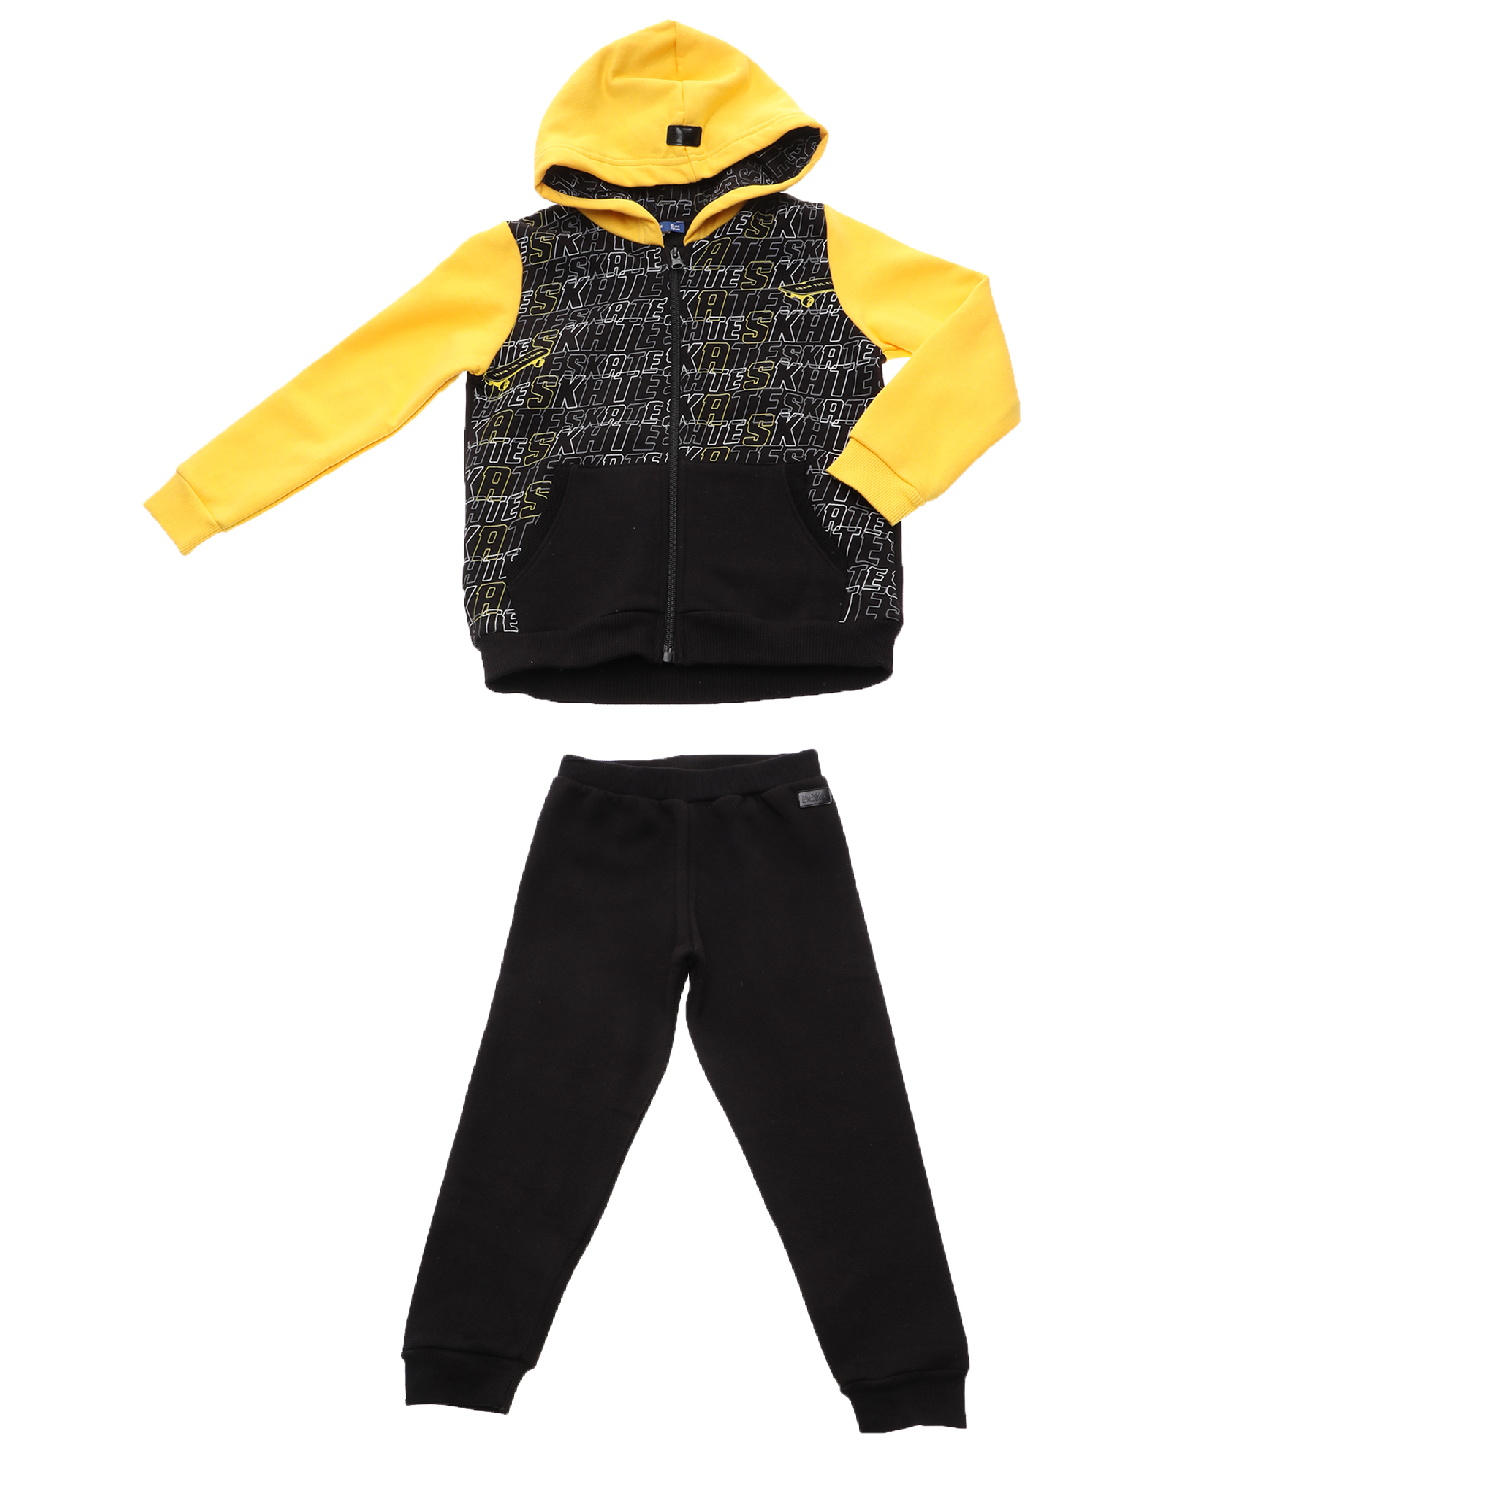 Παιδικά/Boys/Ρούχα/Σετ BODYTALK - Παιδικό σετ φόρμας BODYTALK κίτρινο μαύρο